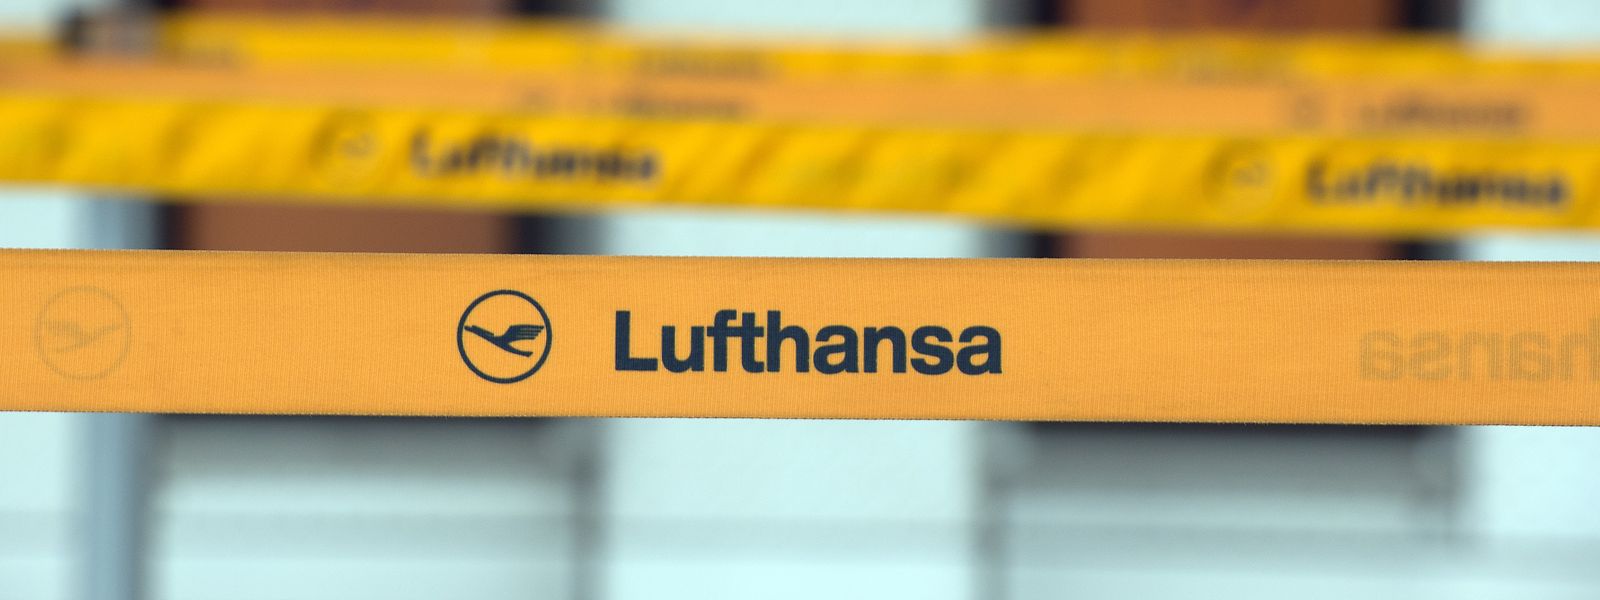 Die Lufthansa streicht weitere 2.000 Flüge. Insgesamt wurden über 3.000 Flüge gestrichen.